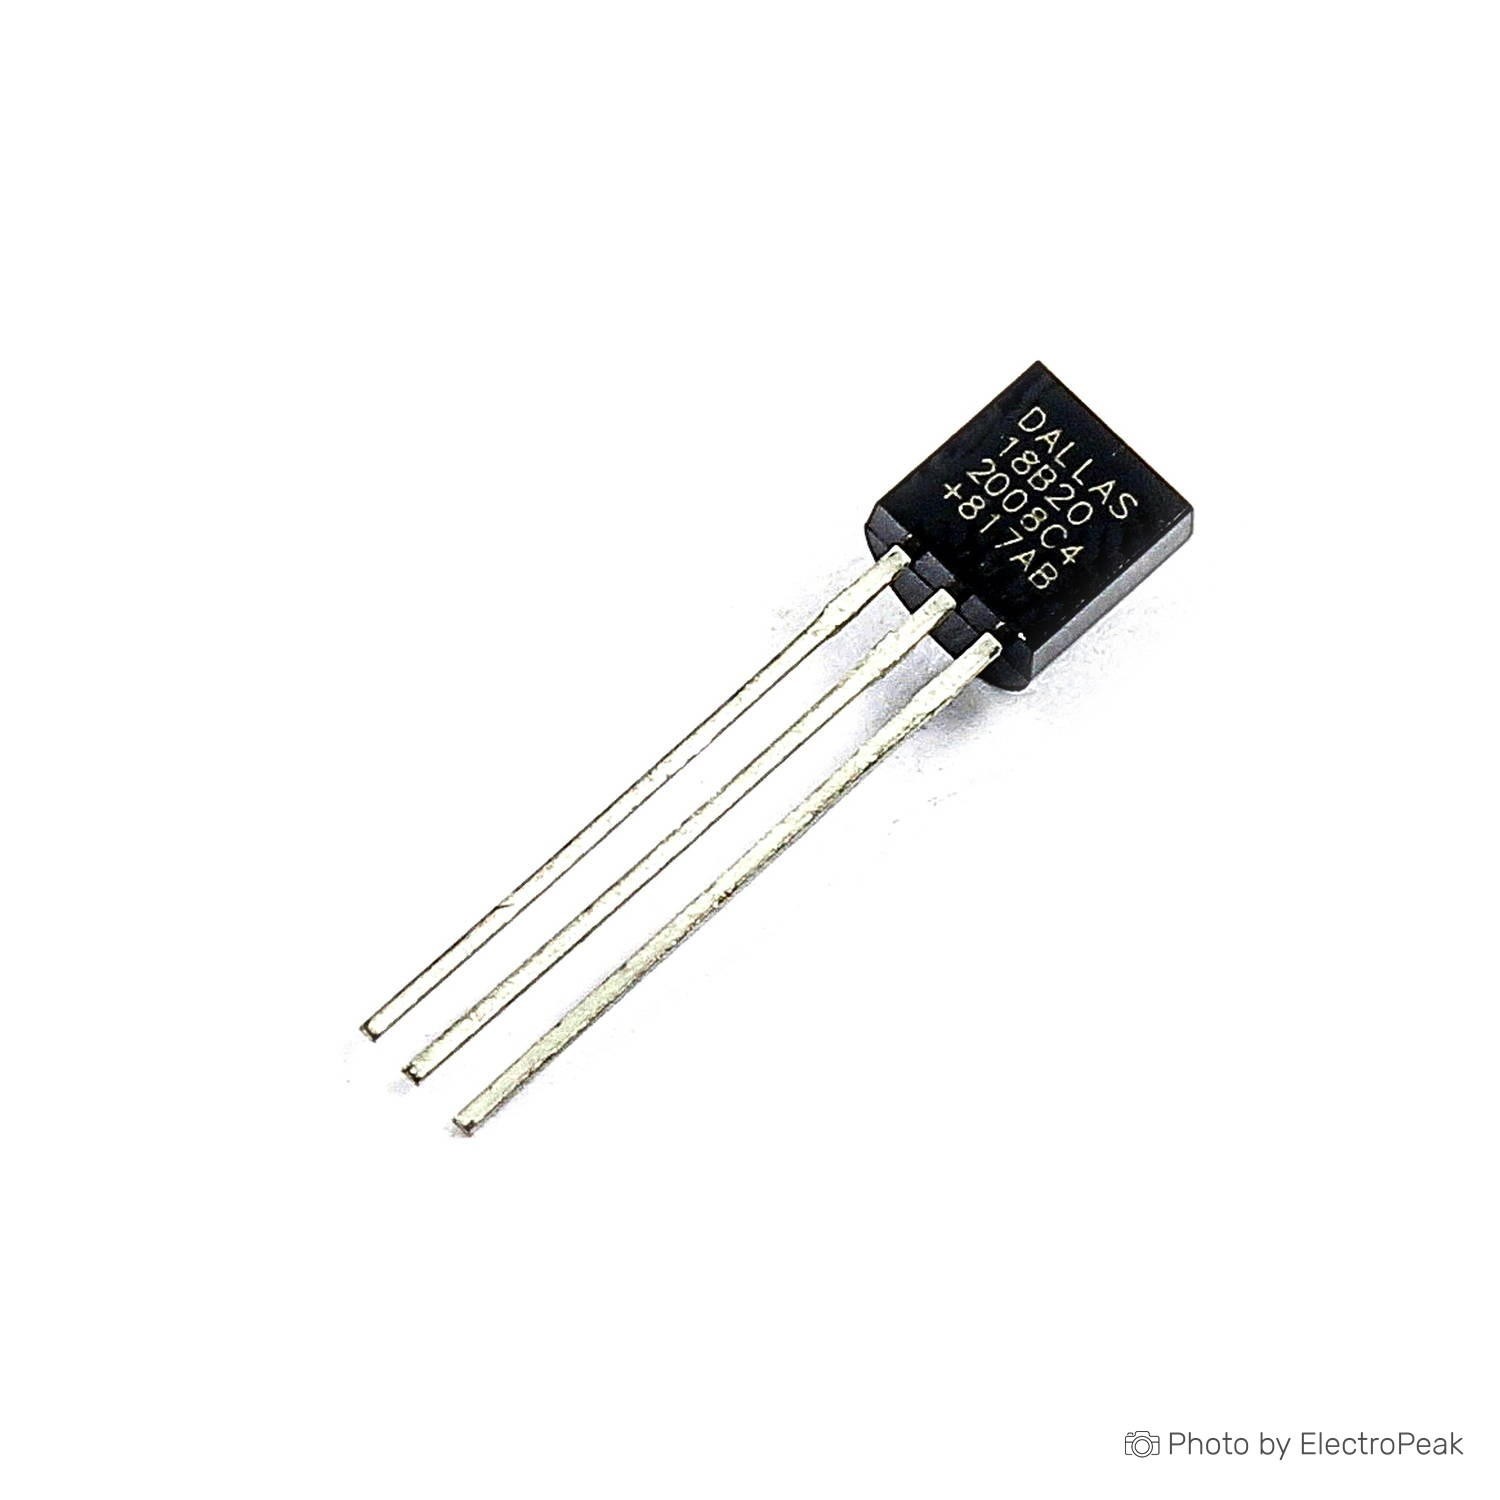 DS18B20 Temperature Sensor Dallas 18B20 1-WIRE Digital Thermometer